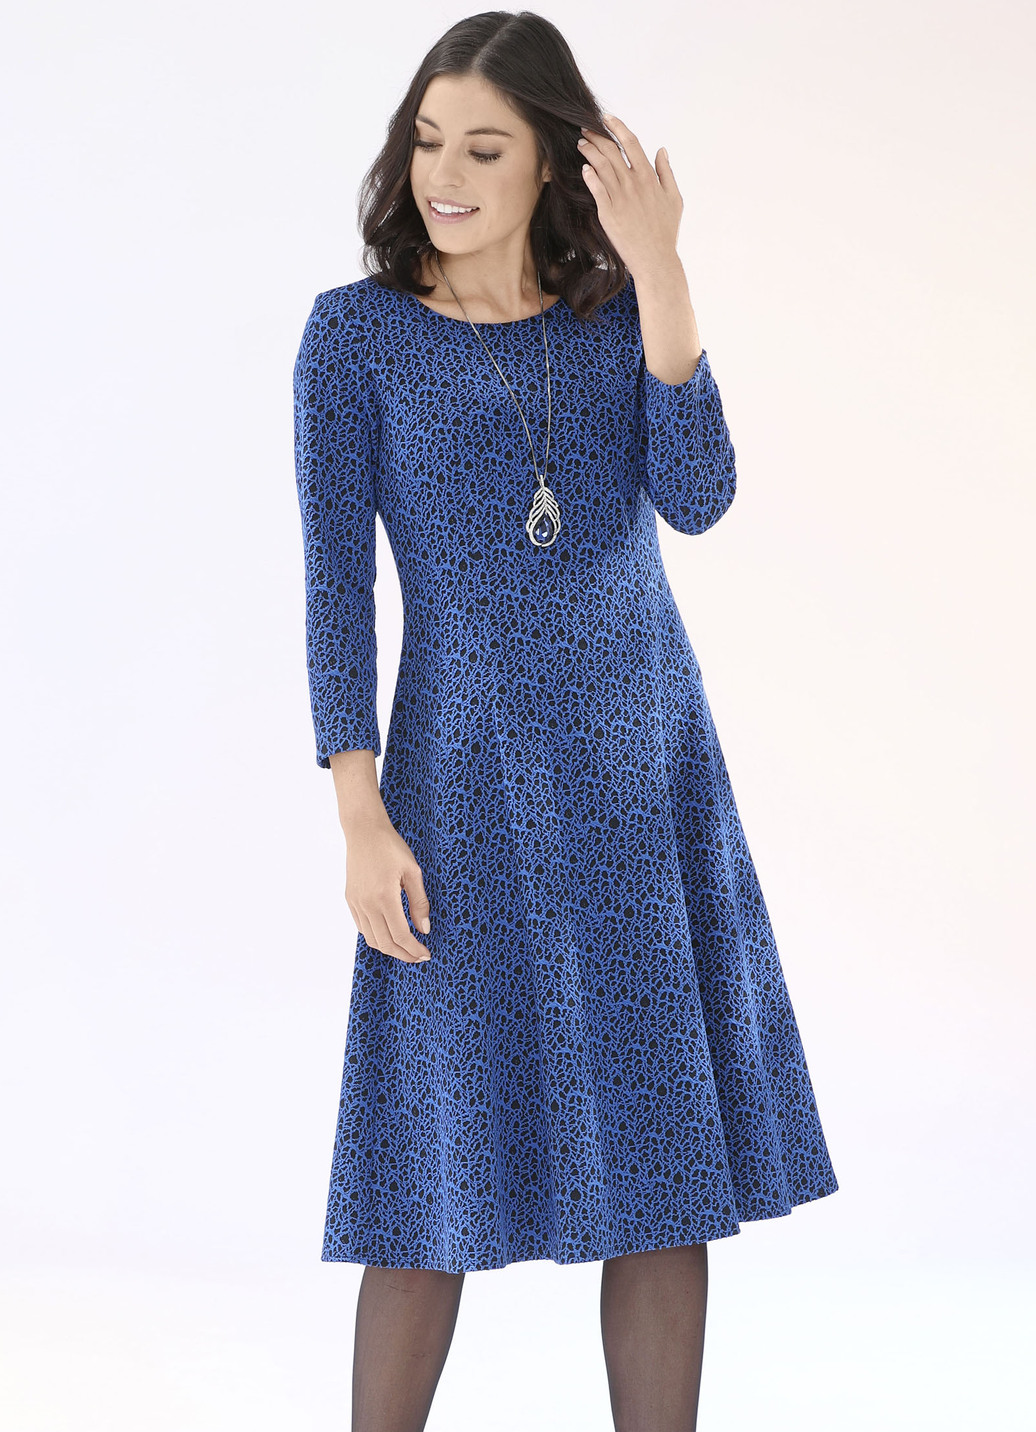 Strick-Kleid mit leichtem Cloqué-Effekt, Royalblau-Schwarz, Größe 550 von KLAUS MODELLE